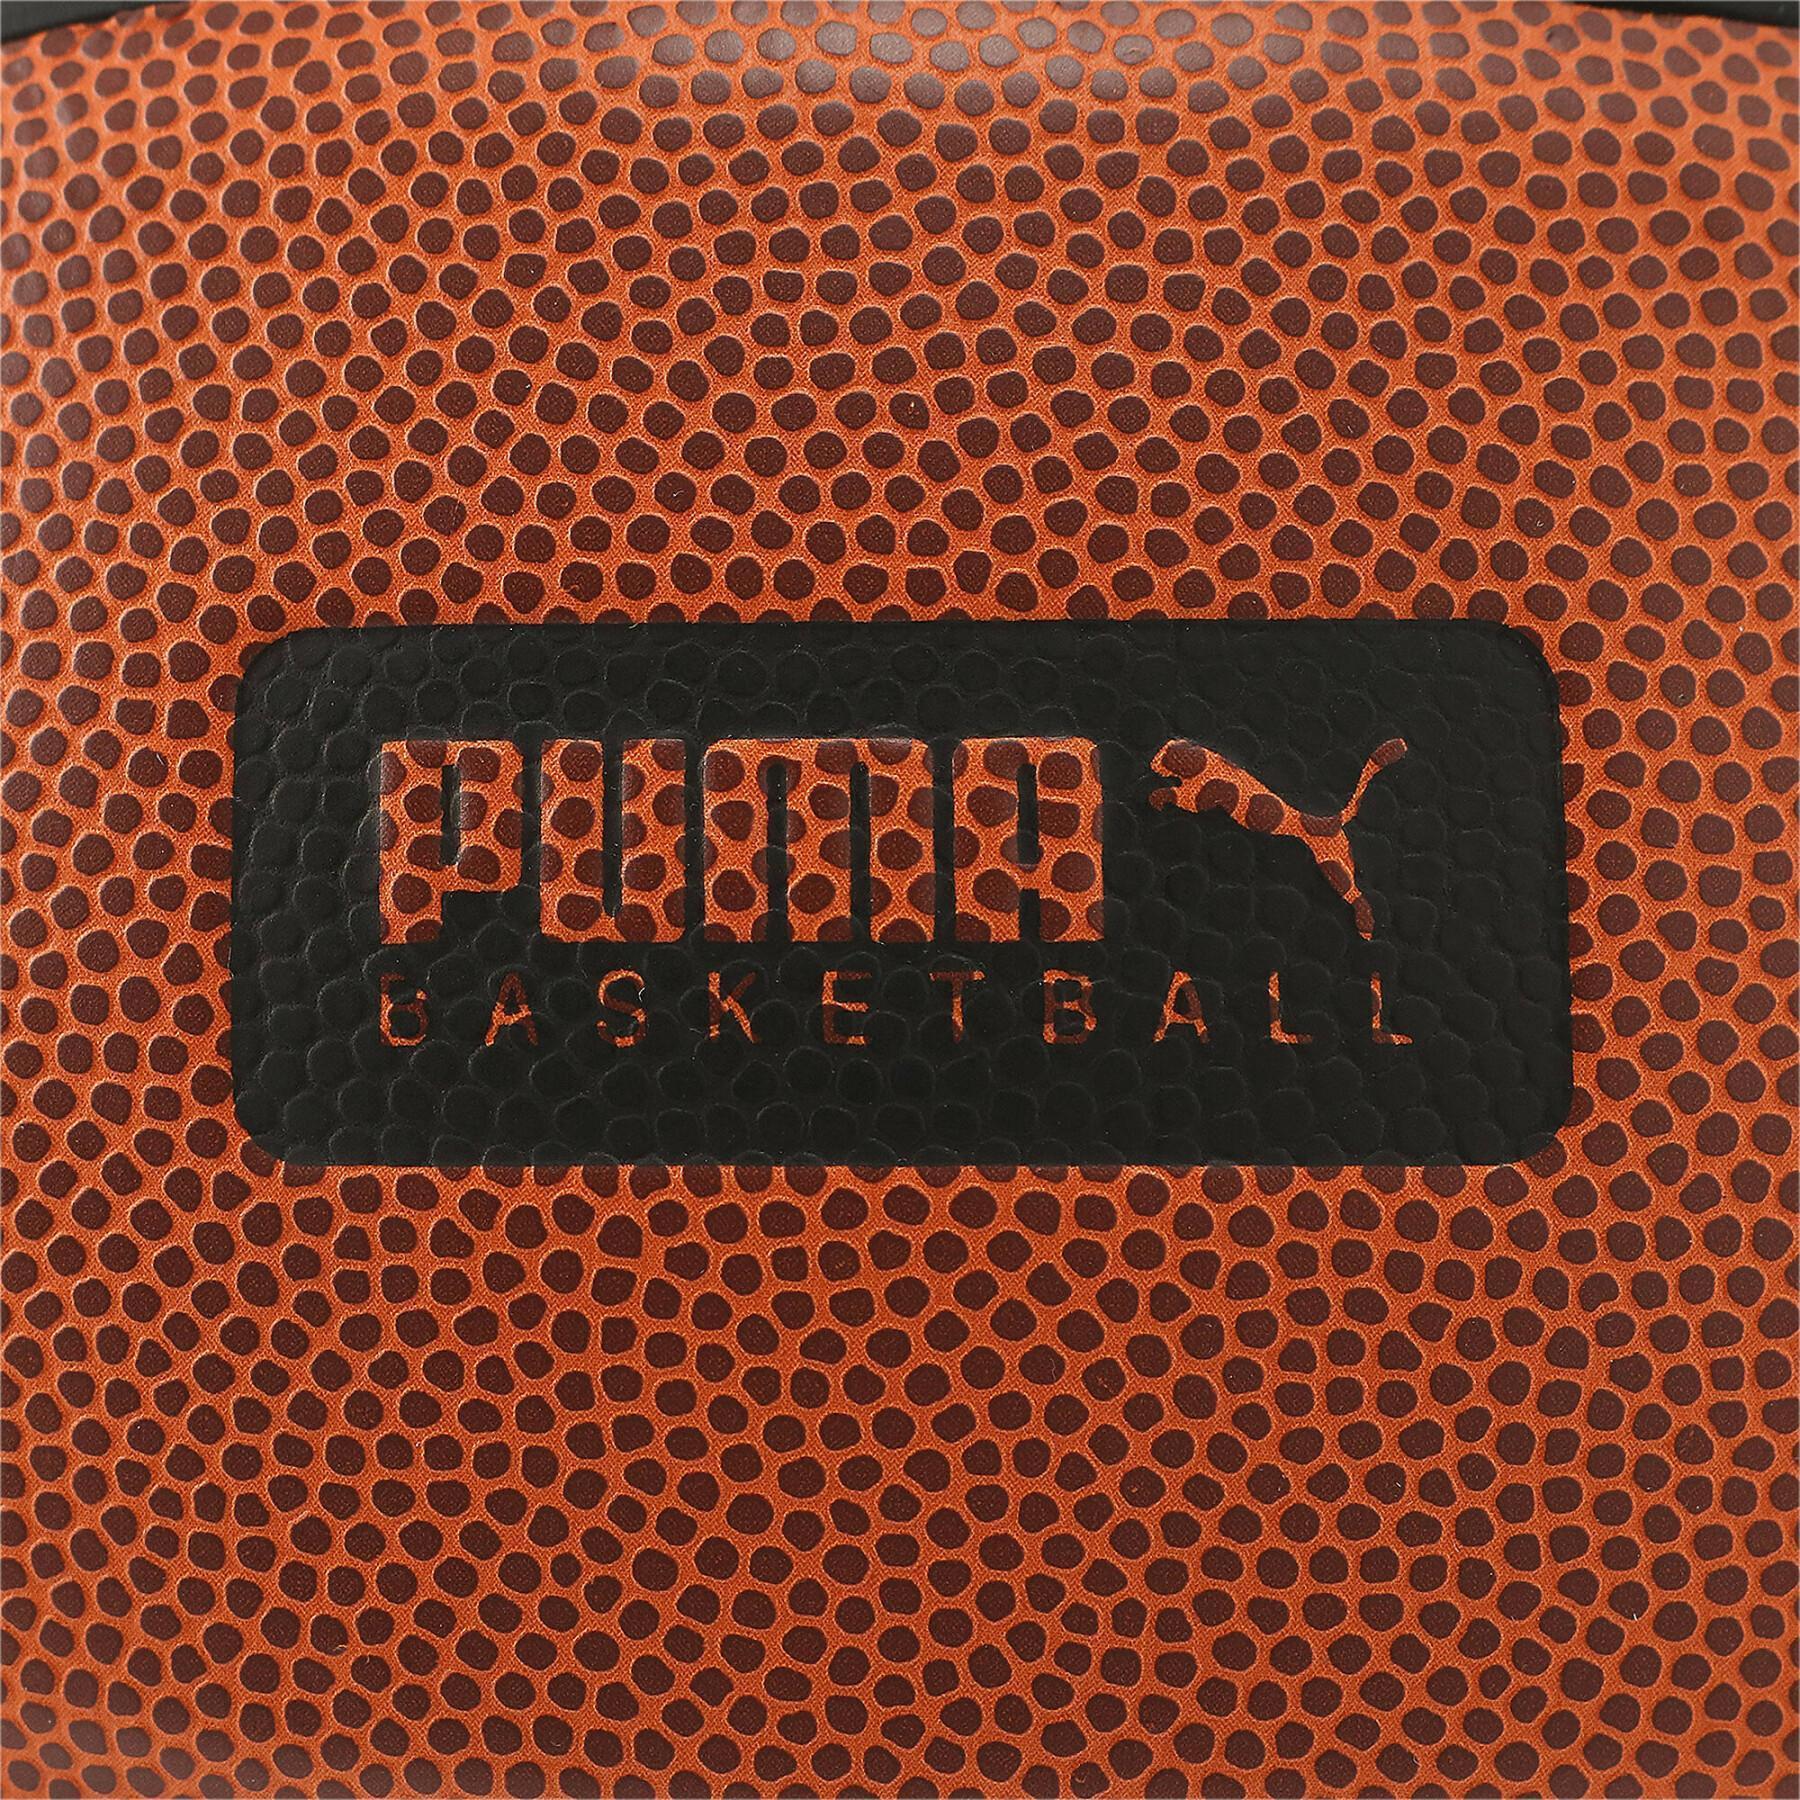 Ballon Puma Basketball Top